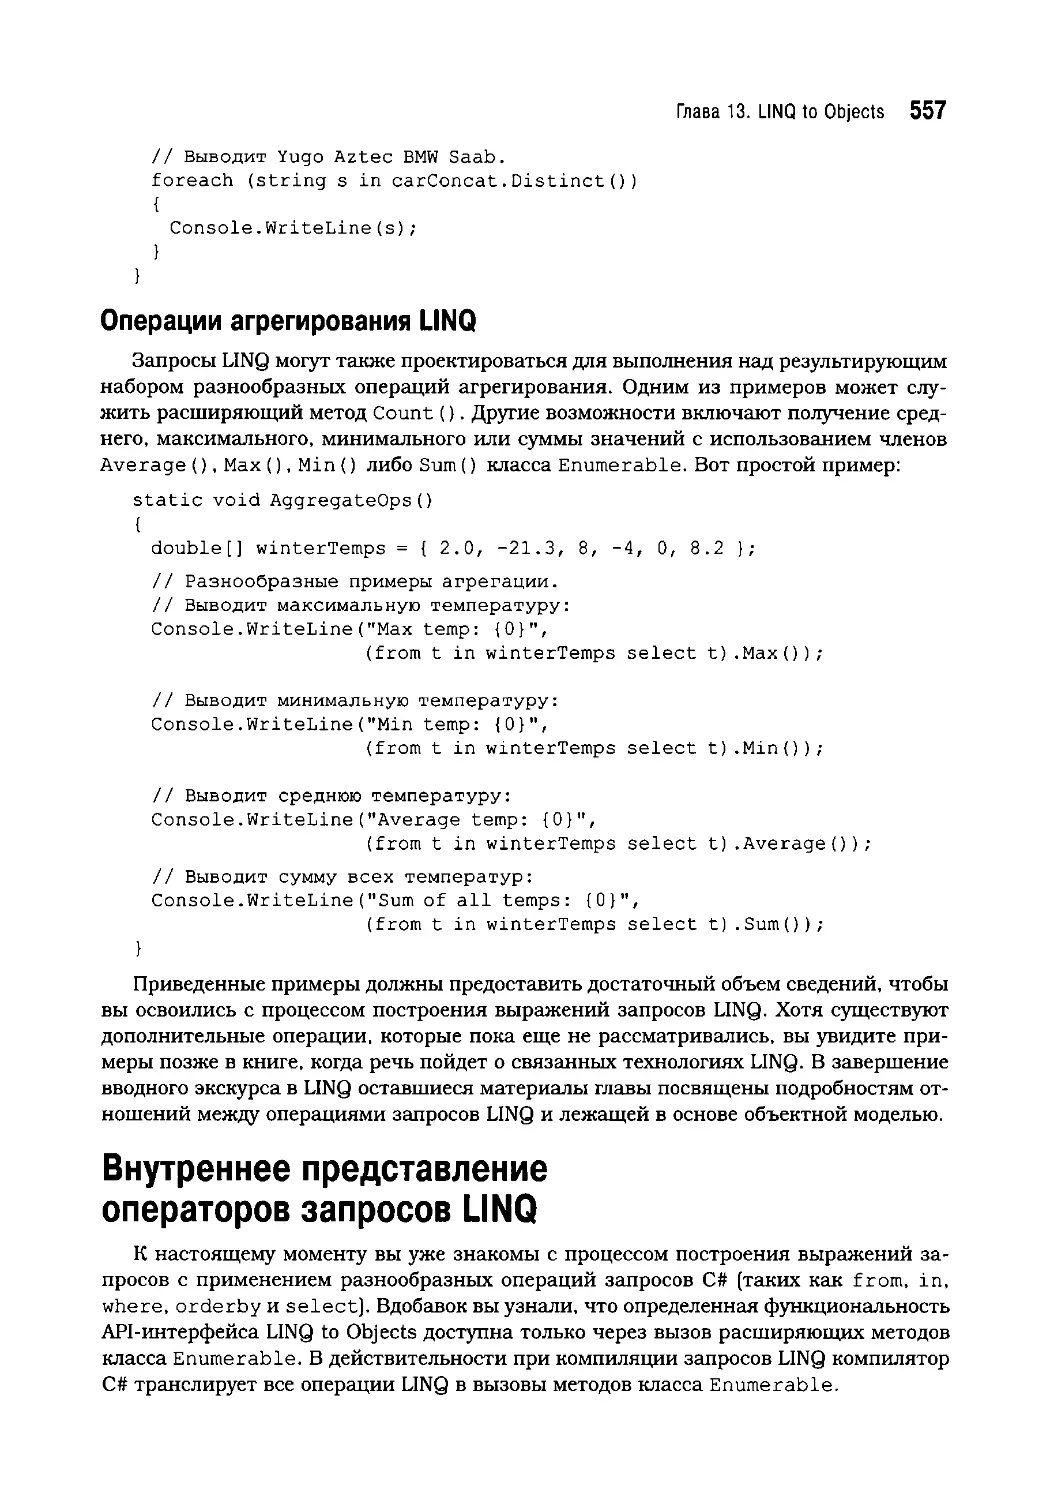 Операции агрегирования LINQ
Внутреннее представление операторов запросов LINQ